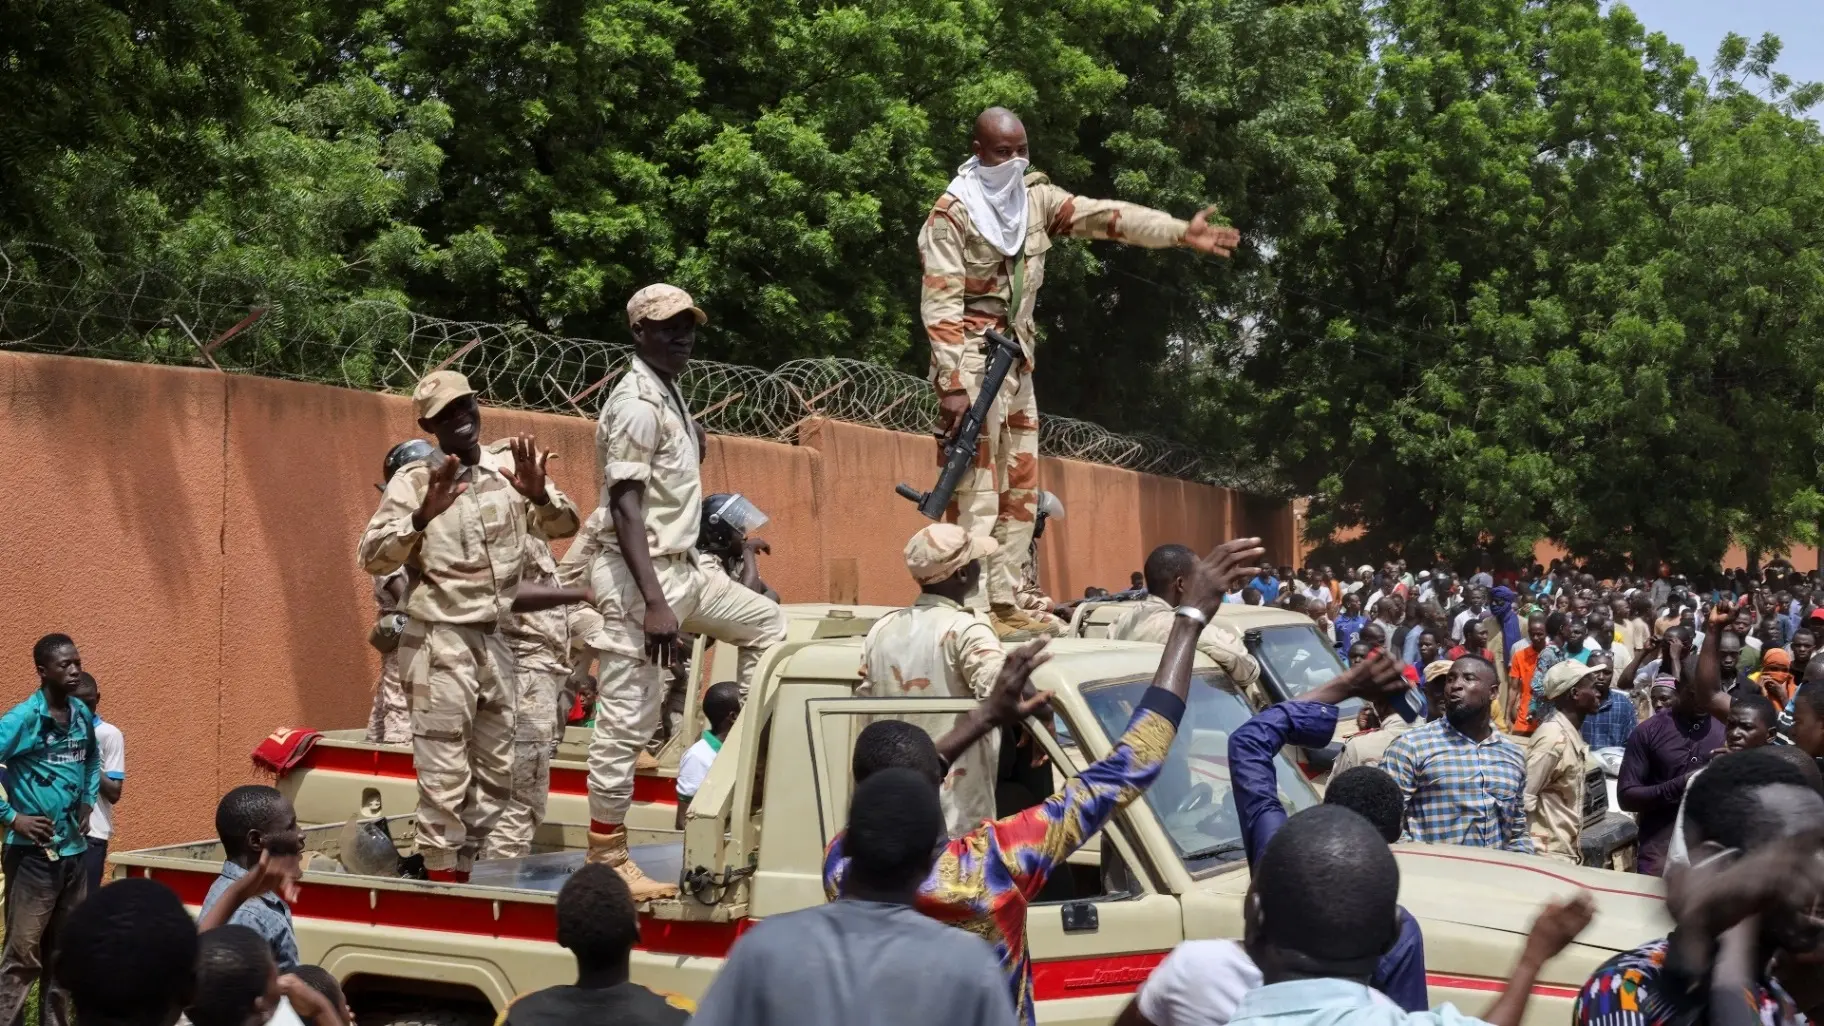 مجموعة “فاغنر” الروسية تصل النيجر لدعم الانقلابيين مع اقتراب انقضاء مهلة “إيكواس”